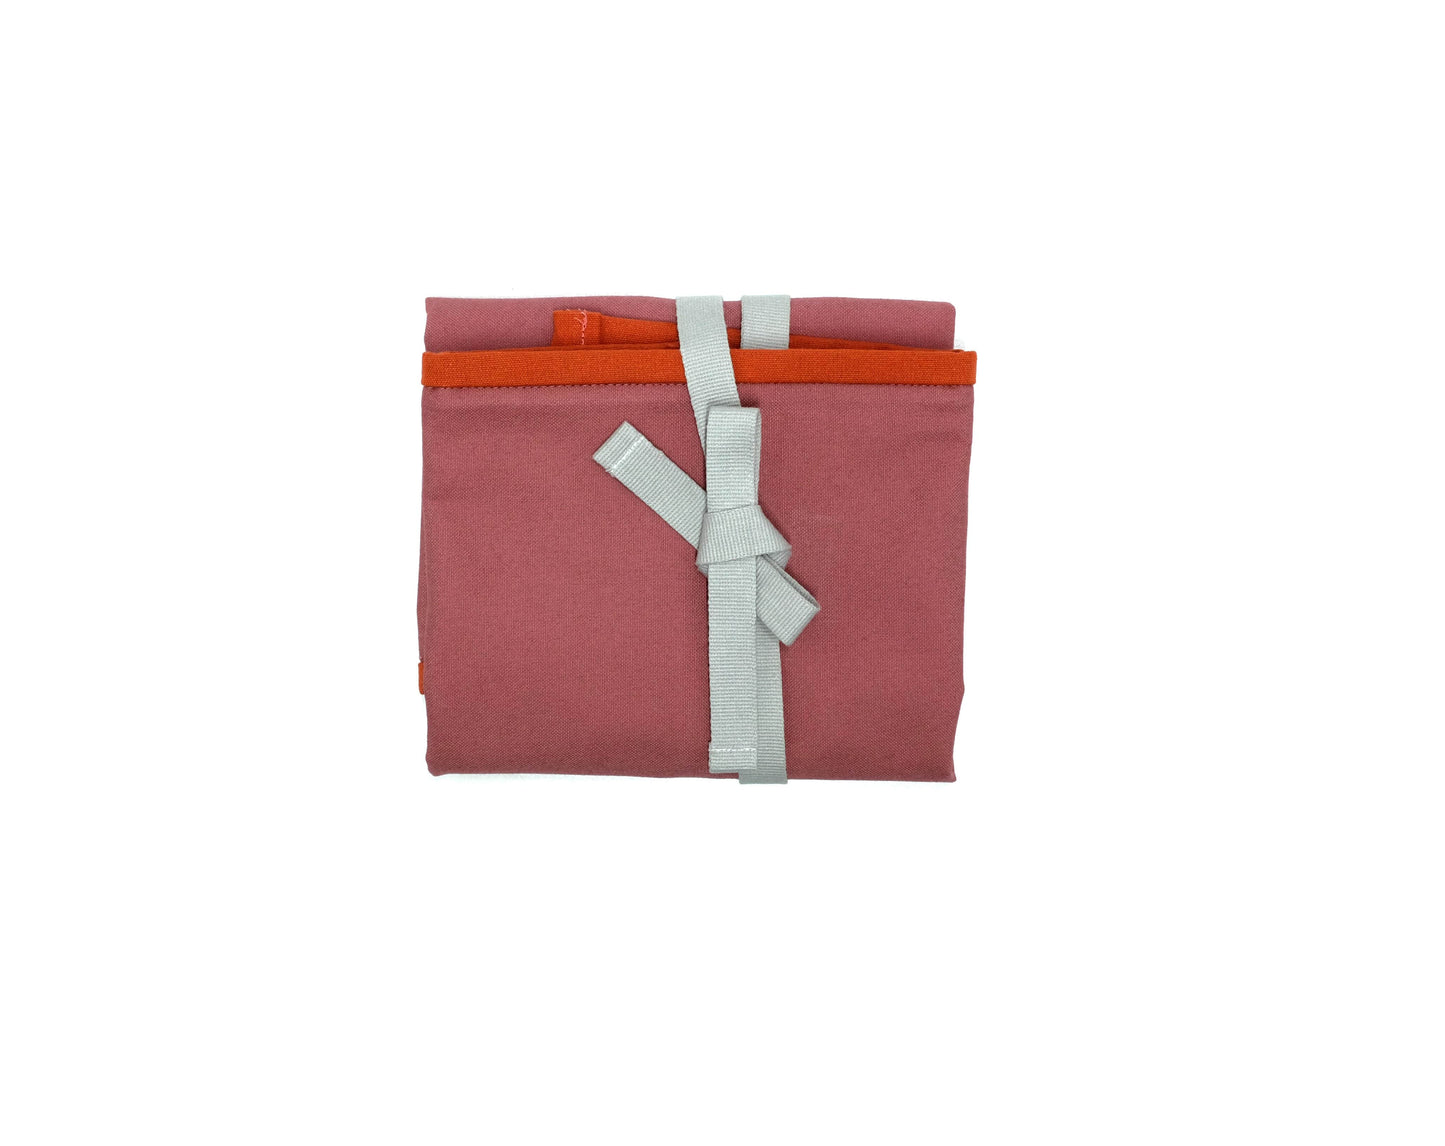 PRIOR SHOP Food bags / wraps SALE Reusable Sandwich Wrap (Pink)